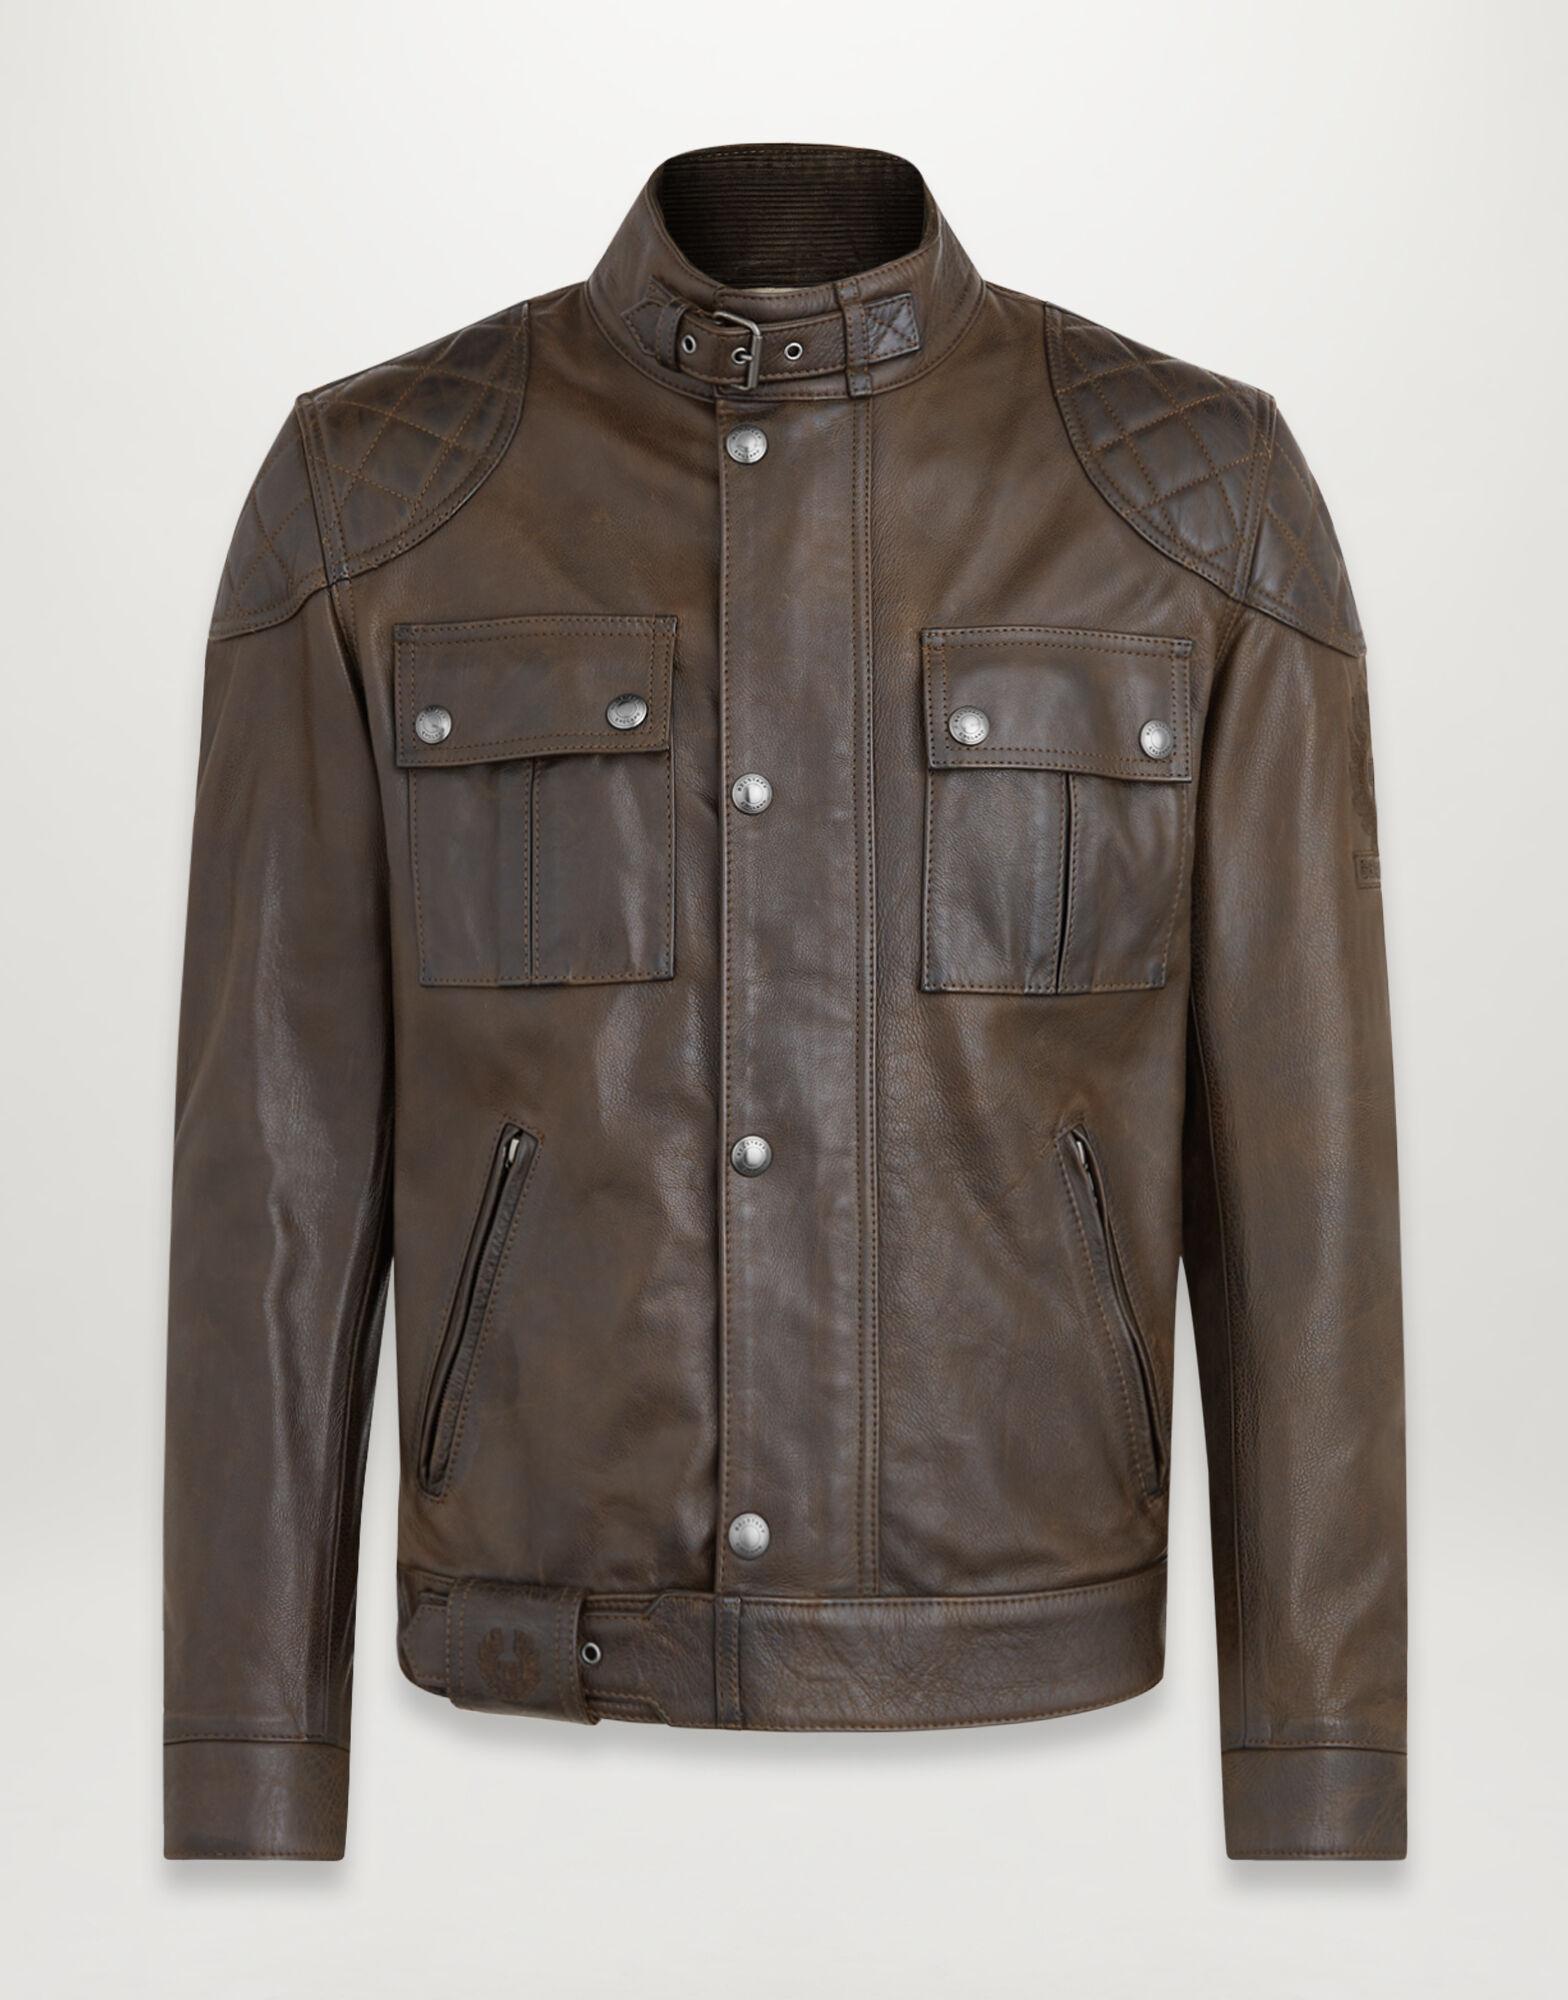 Belstaff Brooklands Leather Jacket in Antique Black (Black) for Men - Lyst